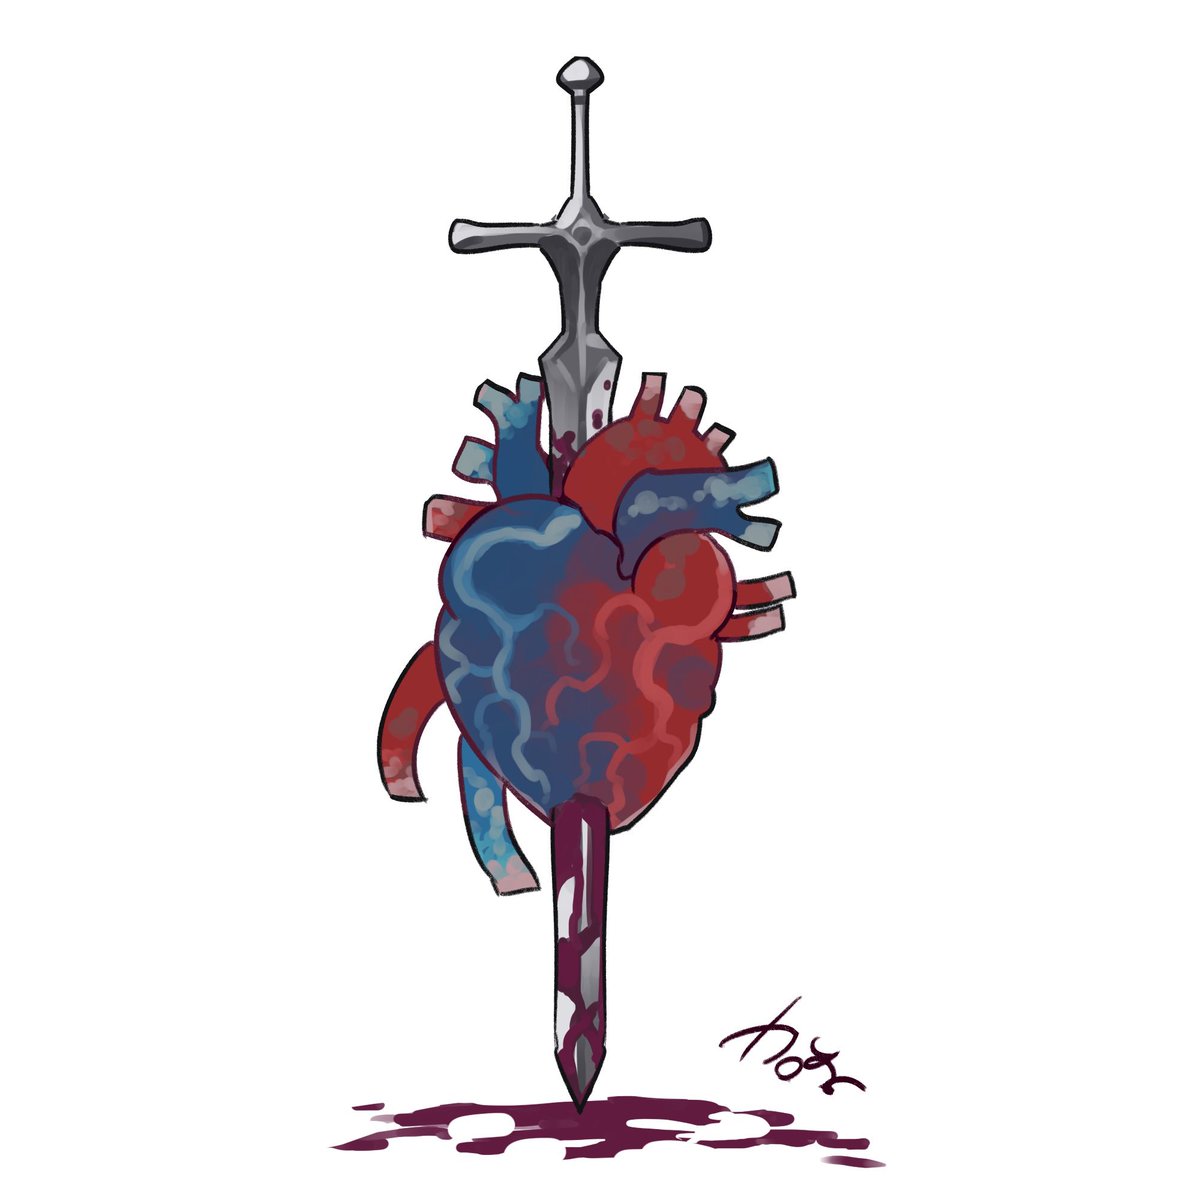 「36   エンブレムなどにも使われている正十字騎士團のシンボルは、悪魔の心臓を突」|加藤和恵のイラスト